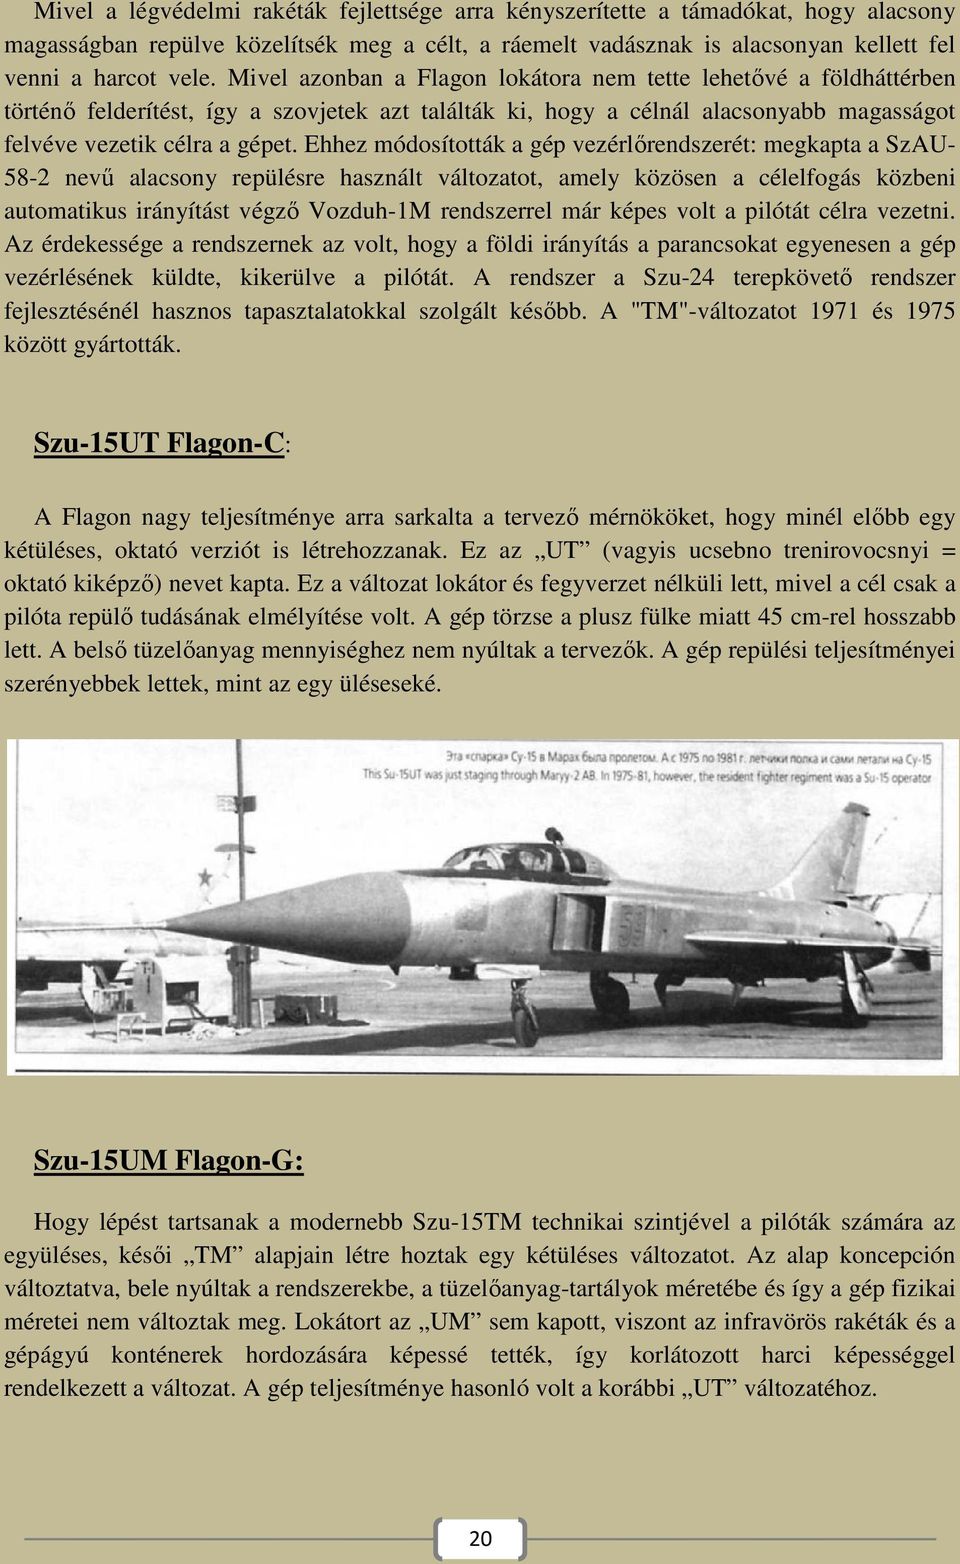 Ehhez módosították a gép vezérlőrendszerét: megkapta a SzAU- 58-2 nevű alacsony repülésre használt változatot, amely közösen a célelfogás közbeni automatikus irányítást végző Vozduh-1M rendszerrel